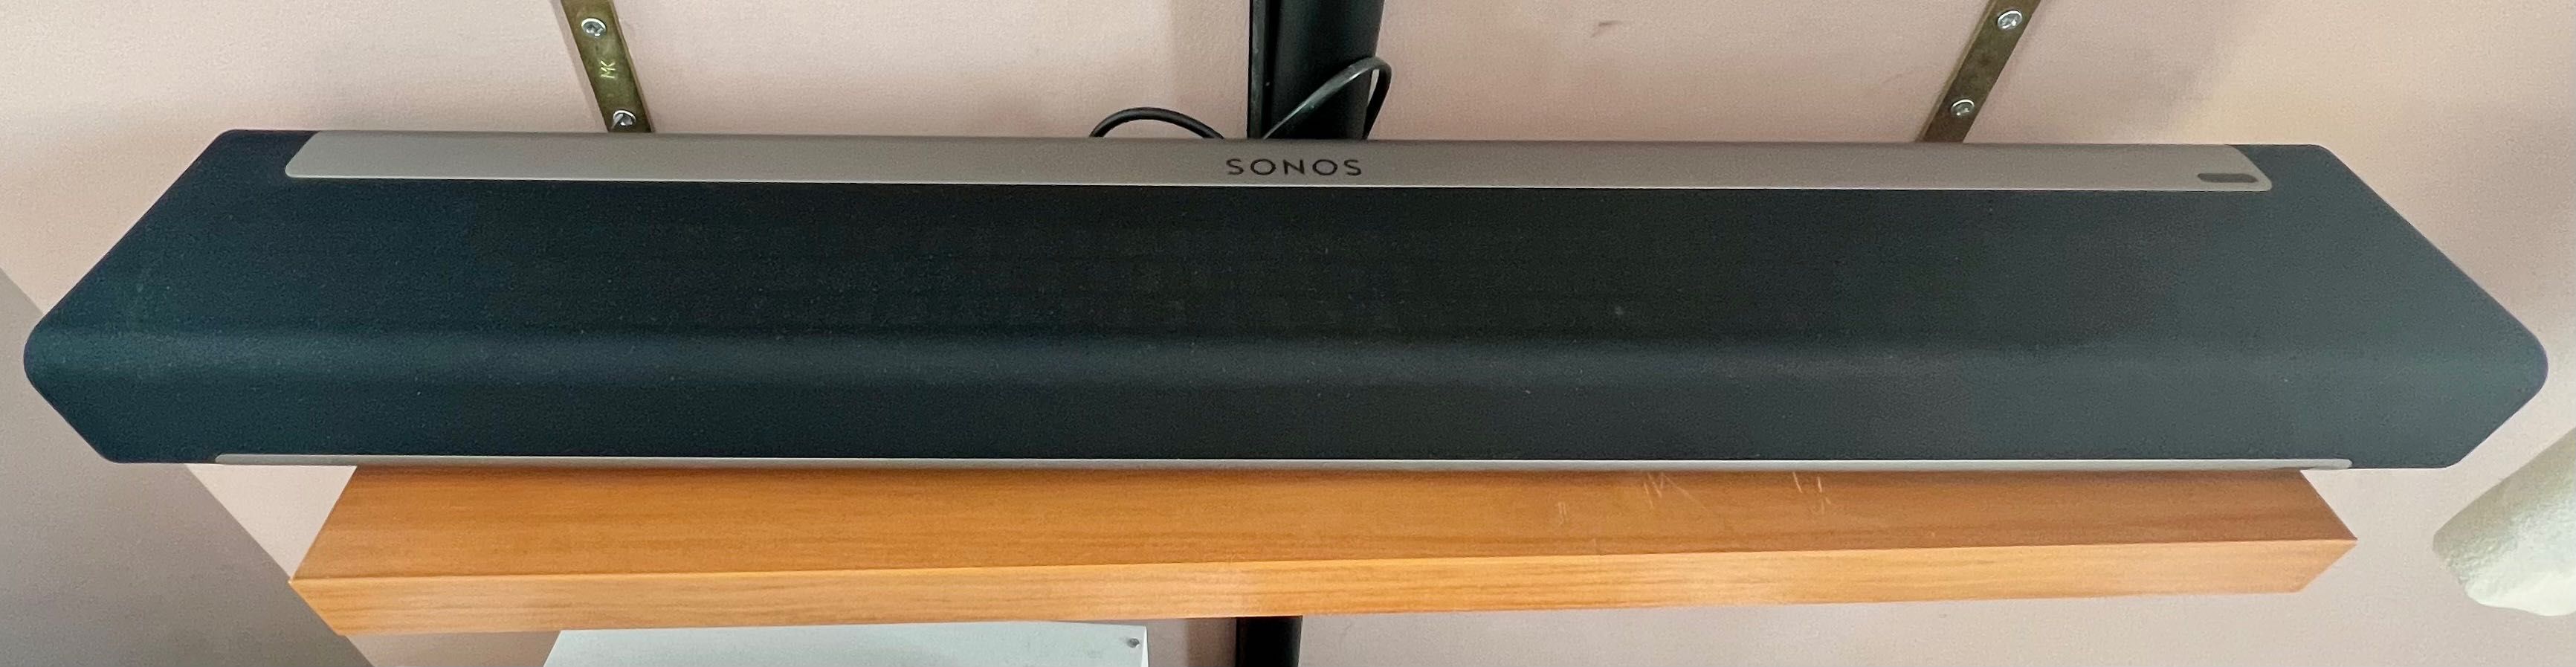 Sonos-cały komplet kina domowego